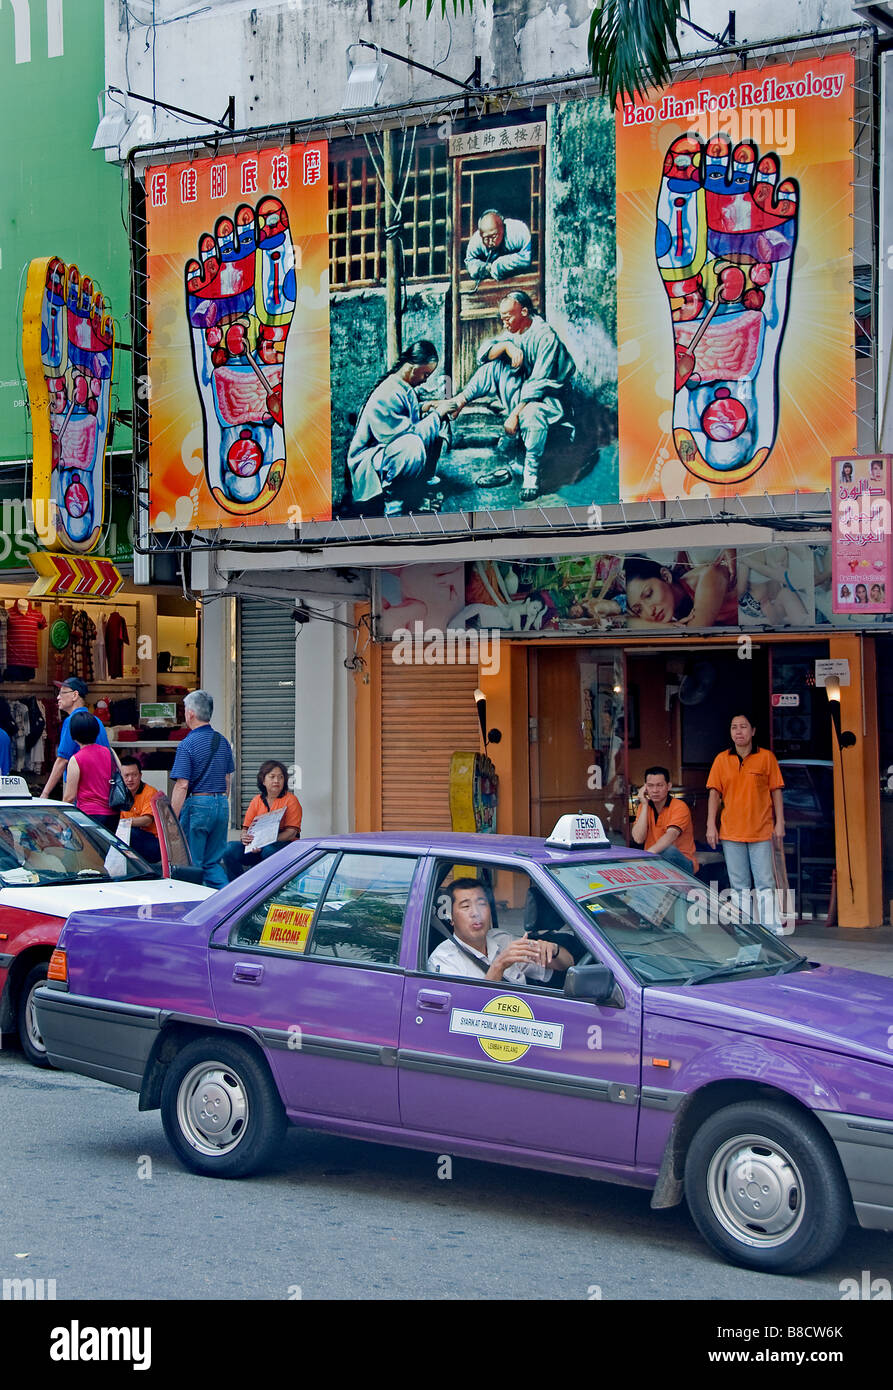 Jalan Bukit Bintang Road Taxi Cab Sign Bao Jian Foot Reflexology Massage Kuala Lumpur Malaysia Stock Photo Alamy